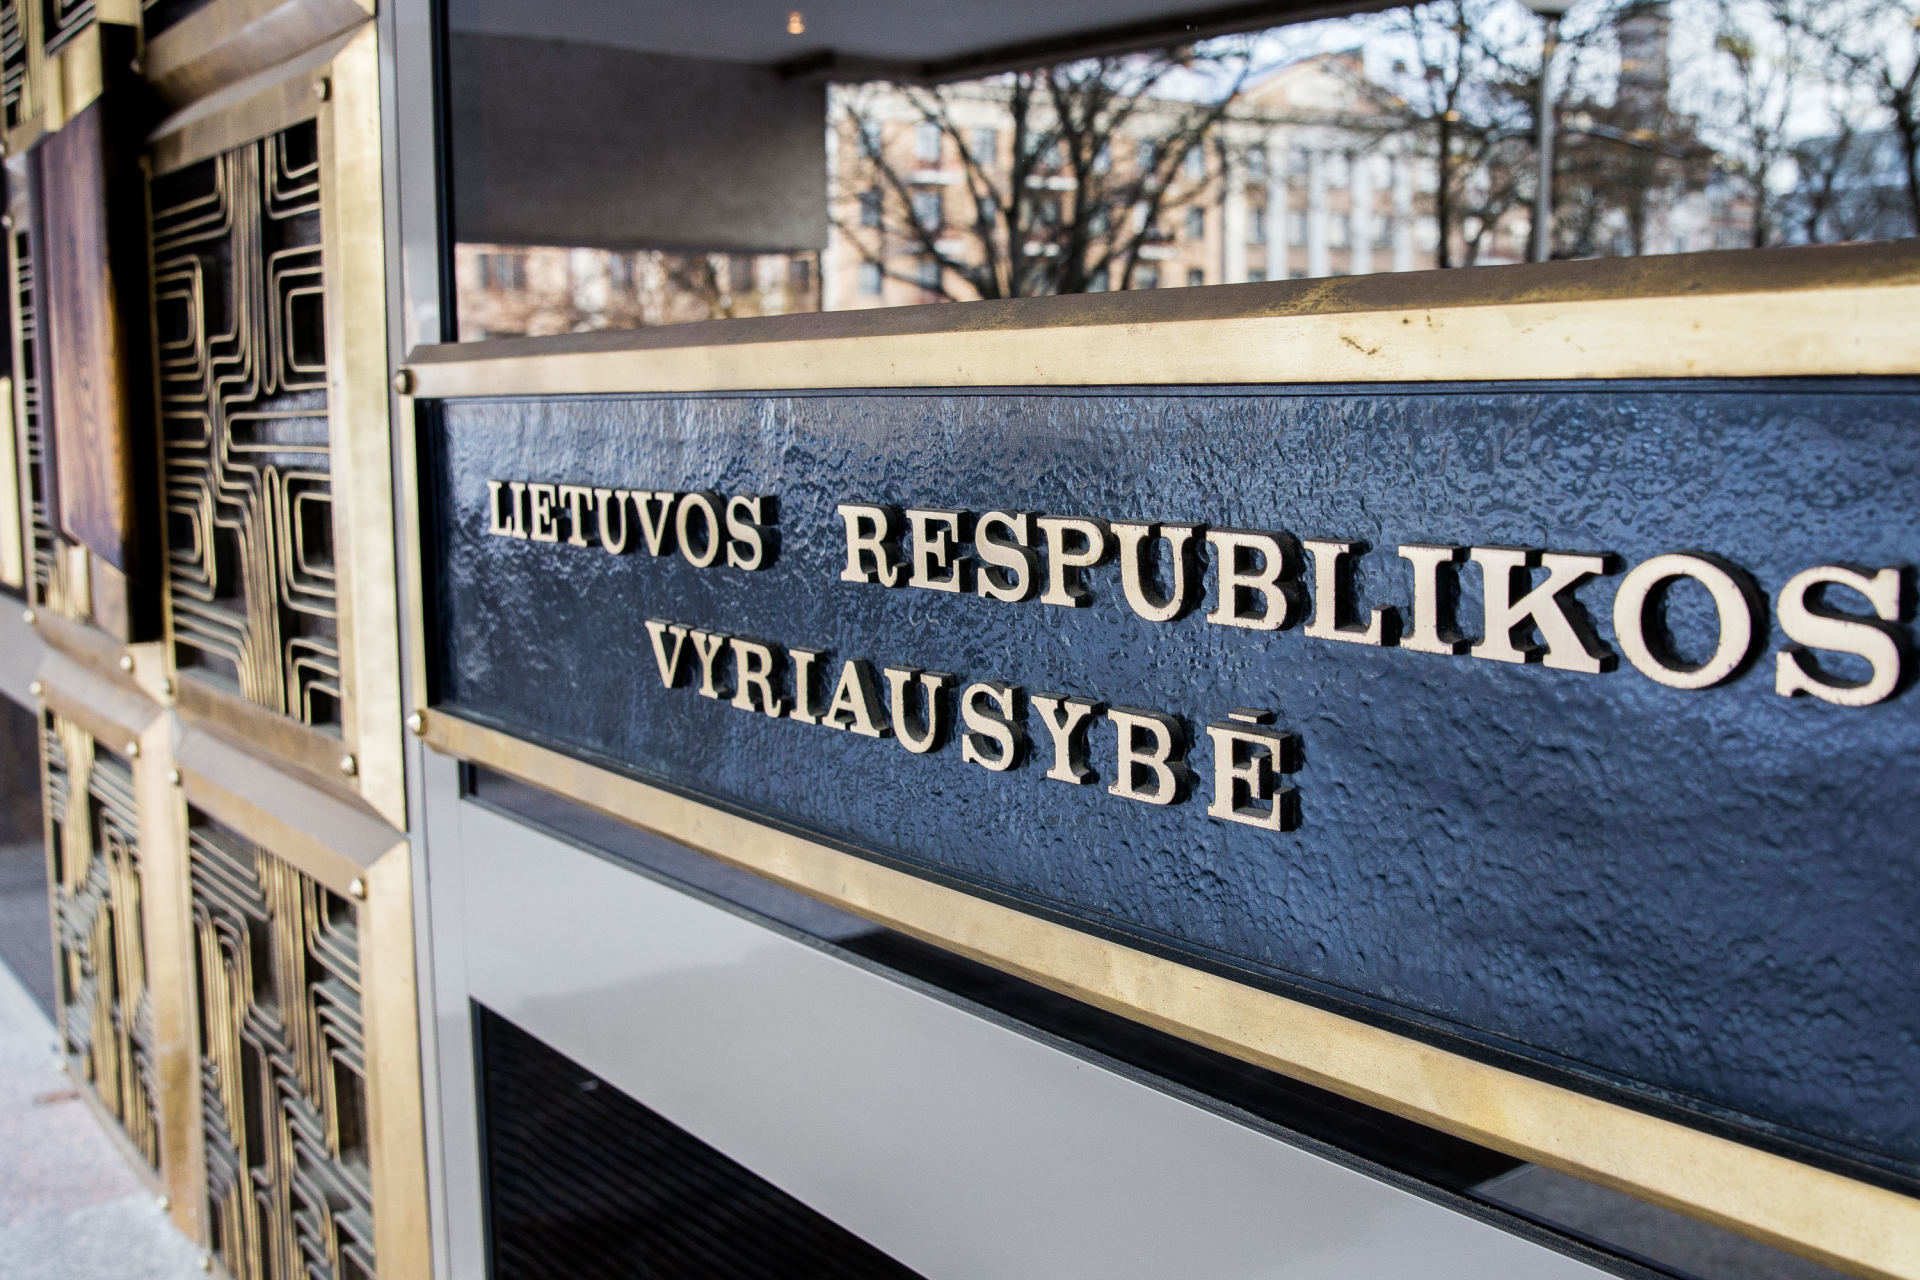 Lietuvai jau įsileidus nemažai užsienio specialistų, Vyriausybė trečiadienį leido atvykti dar 228 užsienio piliečiams iš Latvijos, Estijos, Ukrainos ir Rusijos.